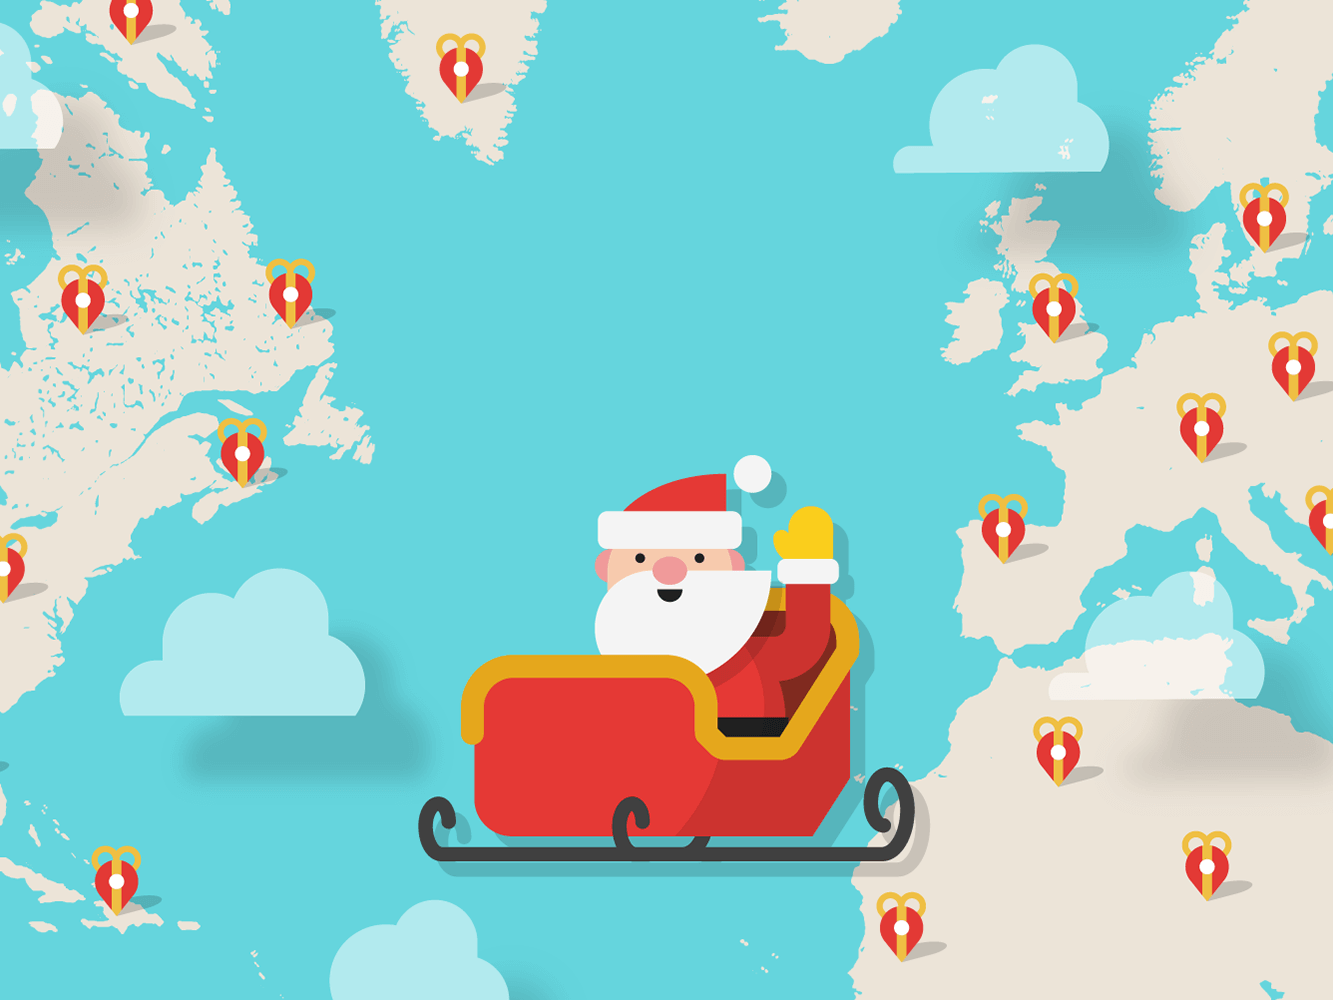 Site acompanha ao vivo jornada do Papai Noel pelo planeta, Mundo